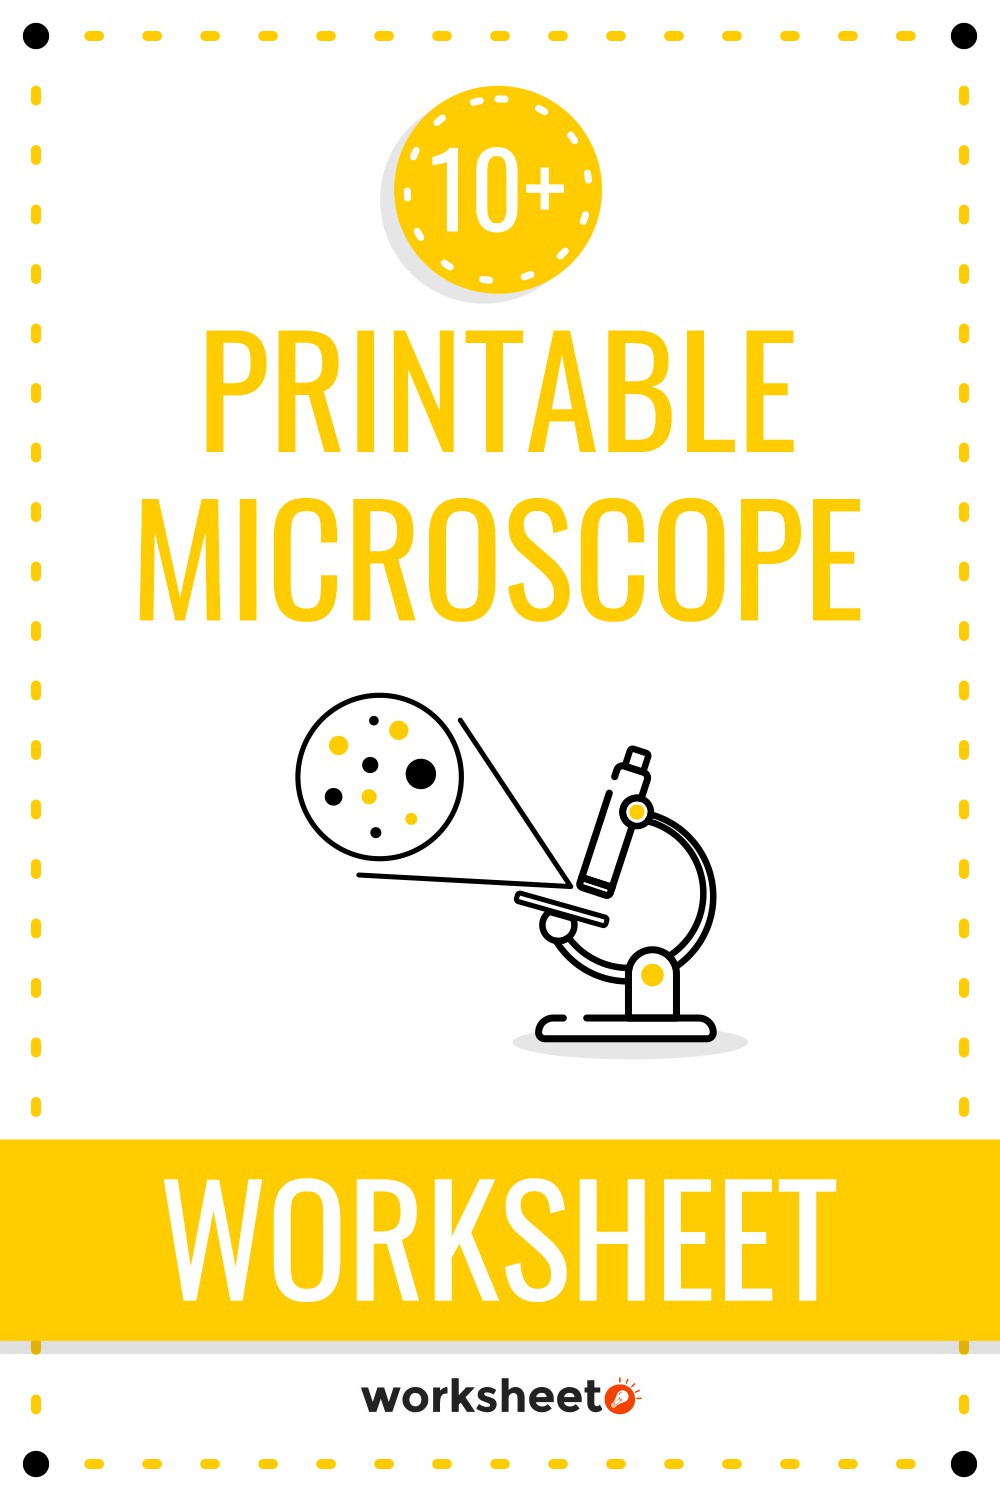 Printable Microscope Worksheet